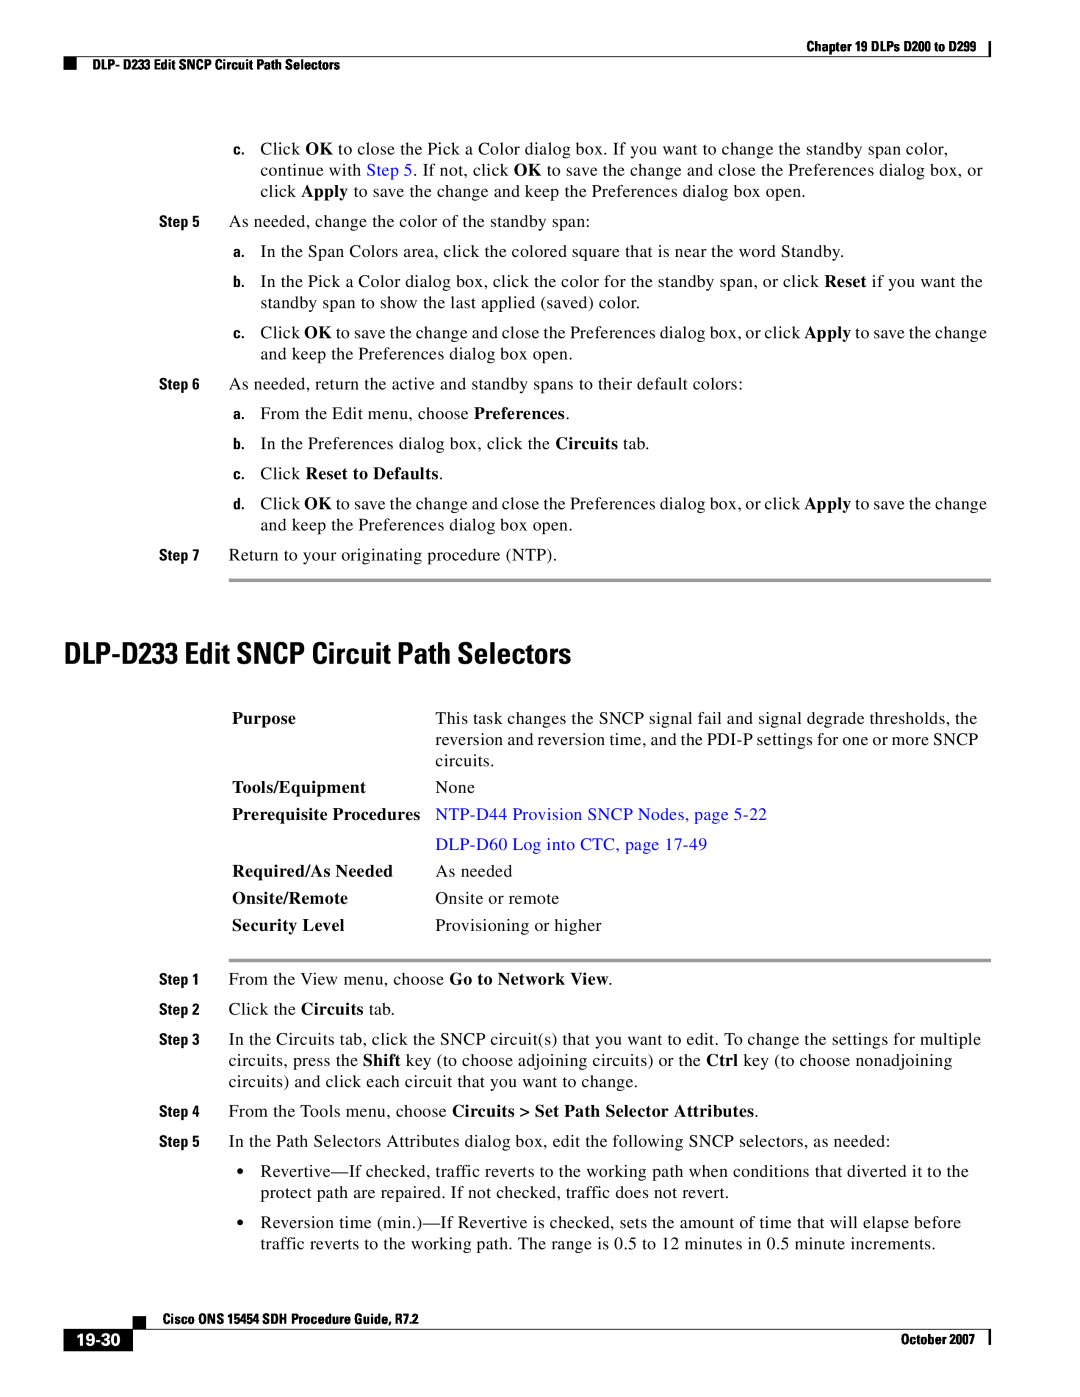 Cisco Systems D200 manual DLP-D233 Edit SNCP Circuit Path Selectors, NTP-D44 Provision SNCP Nodes, page, 19-30, Purpose 